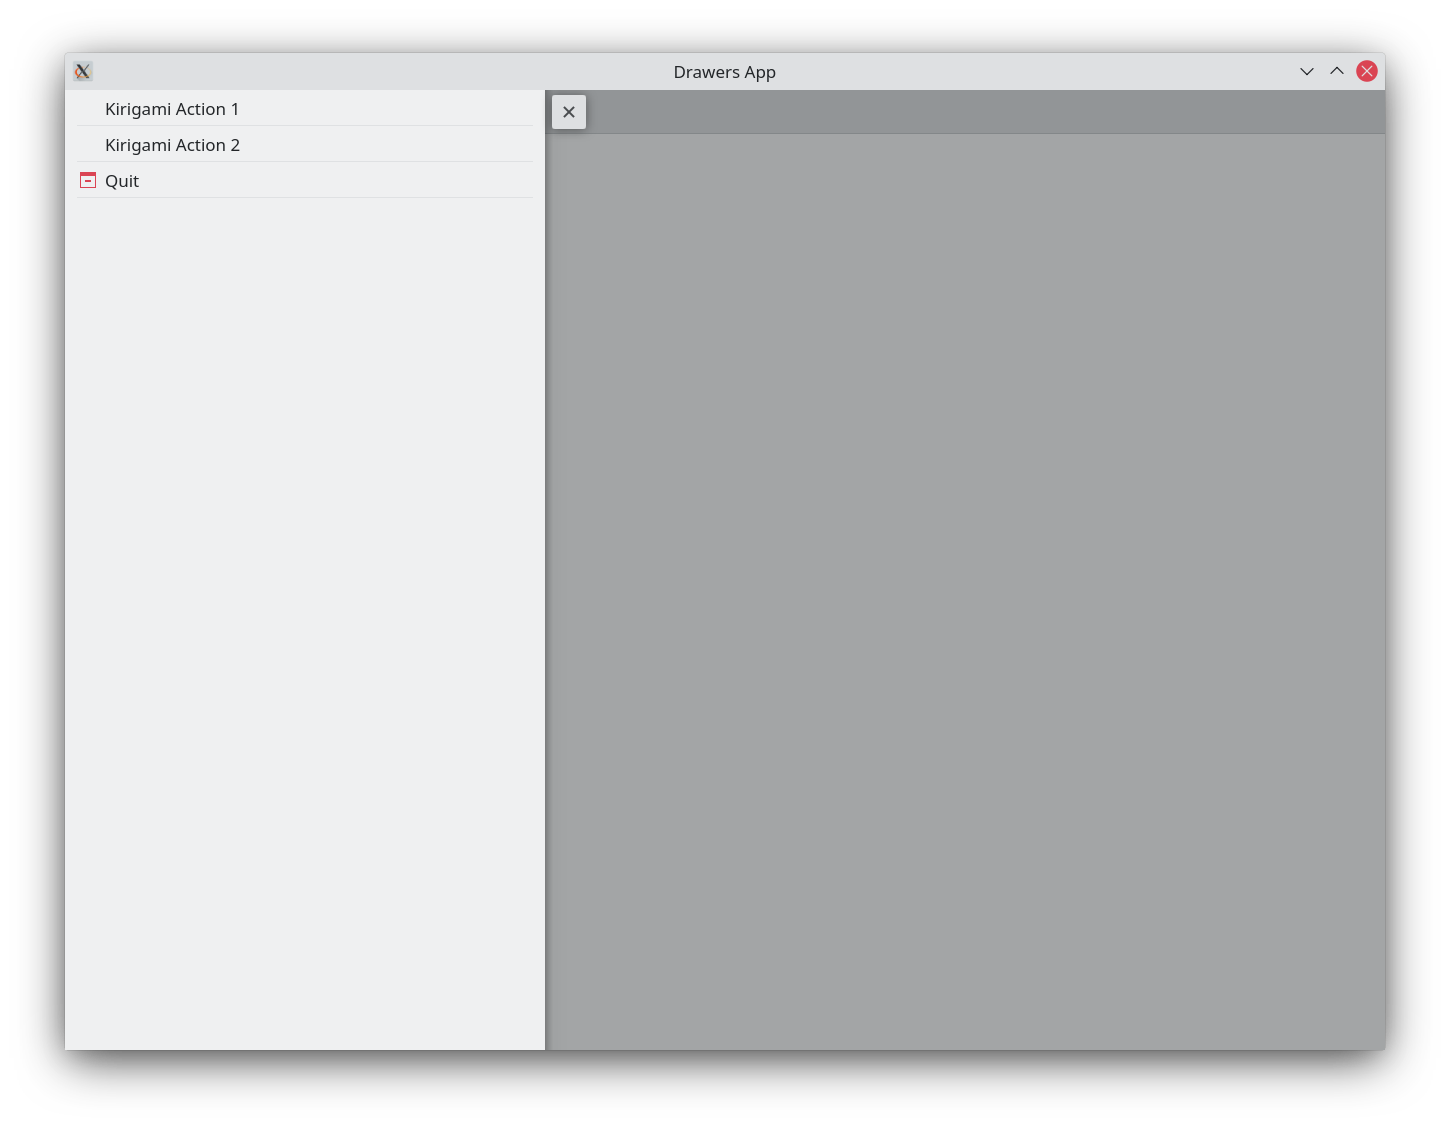 Screenshot of a global drawer in desktop mode that looks like a sidebar